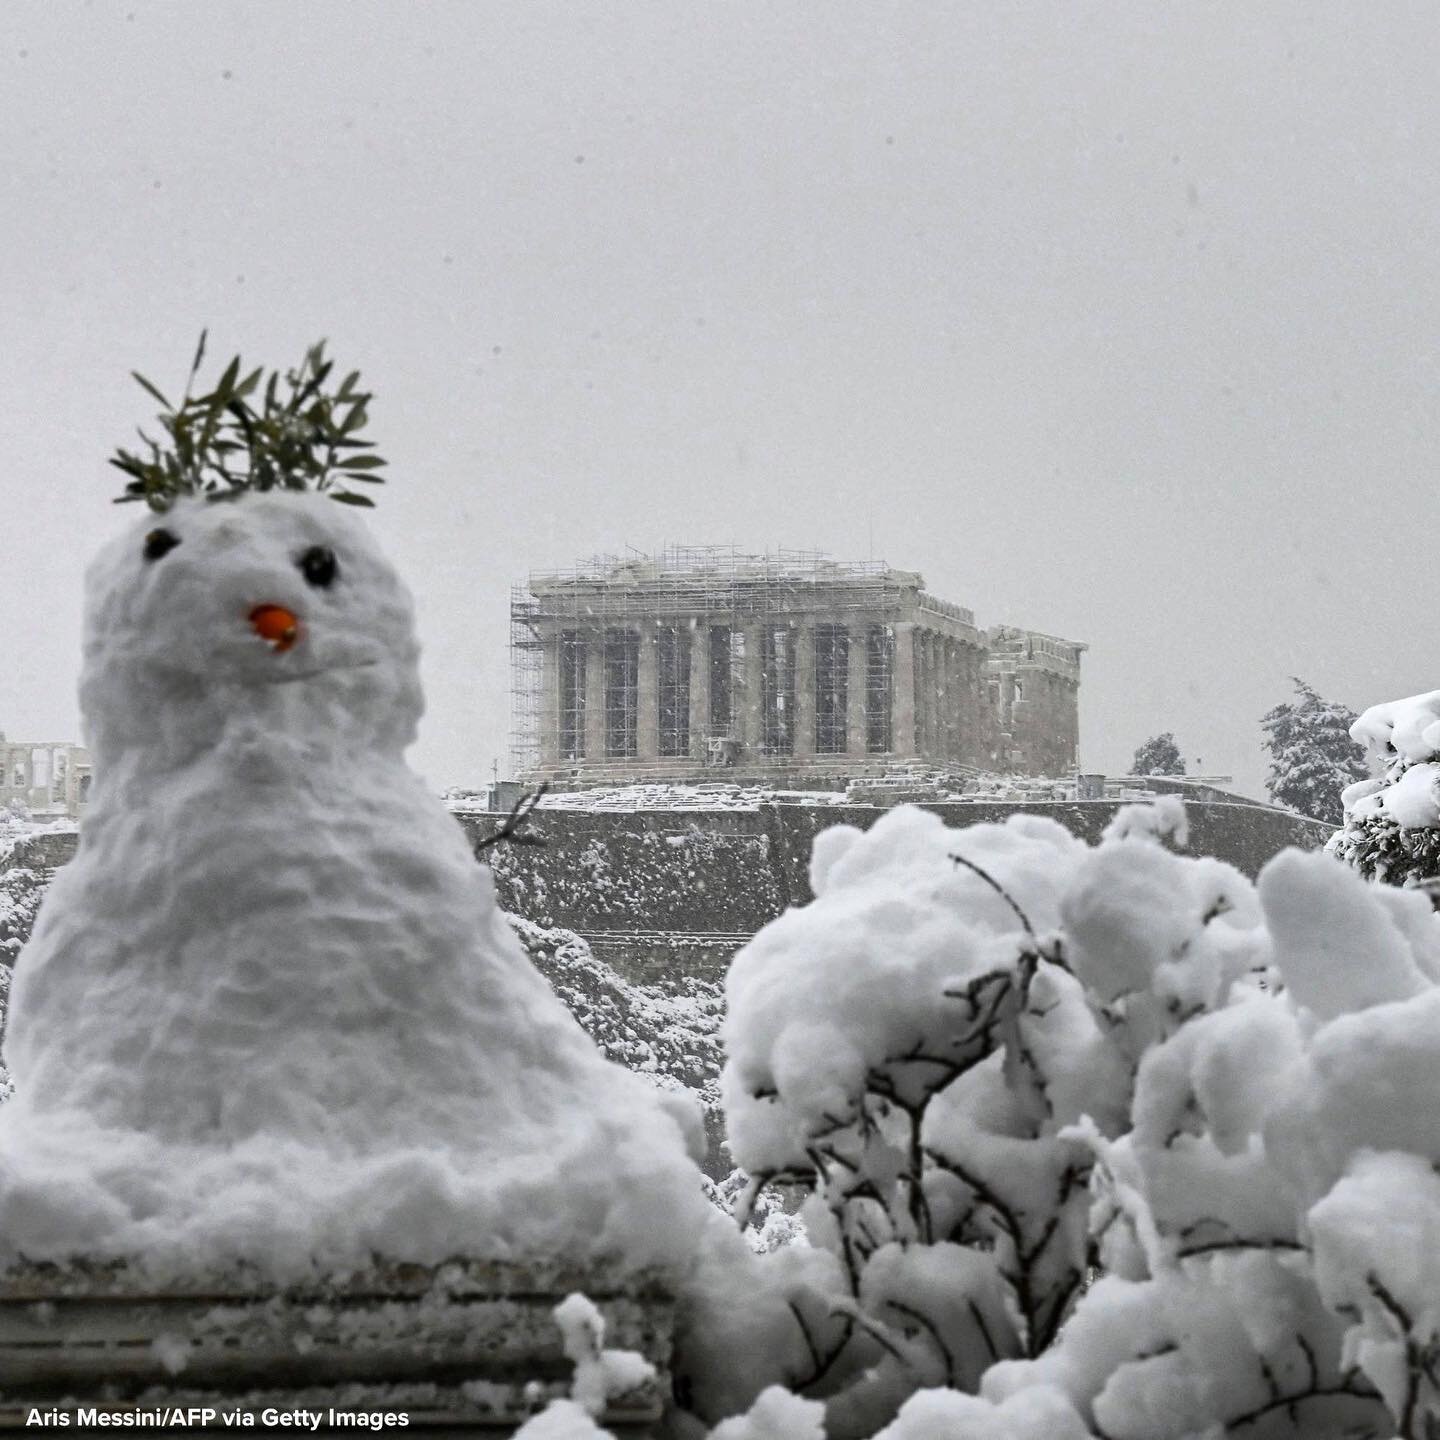 甚至是帕台农神庙?! 大家注意保暖和安全. 🥶🥶#帕台农神庙#acropolistech #雪末日#寒冷的天气